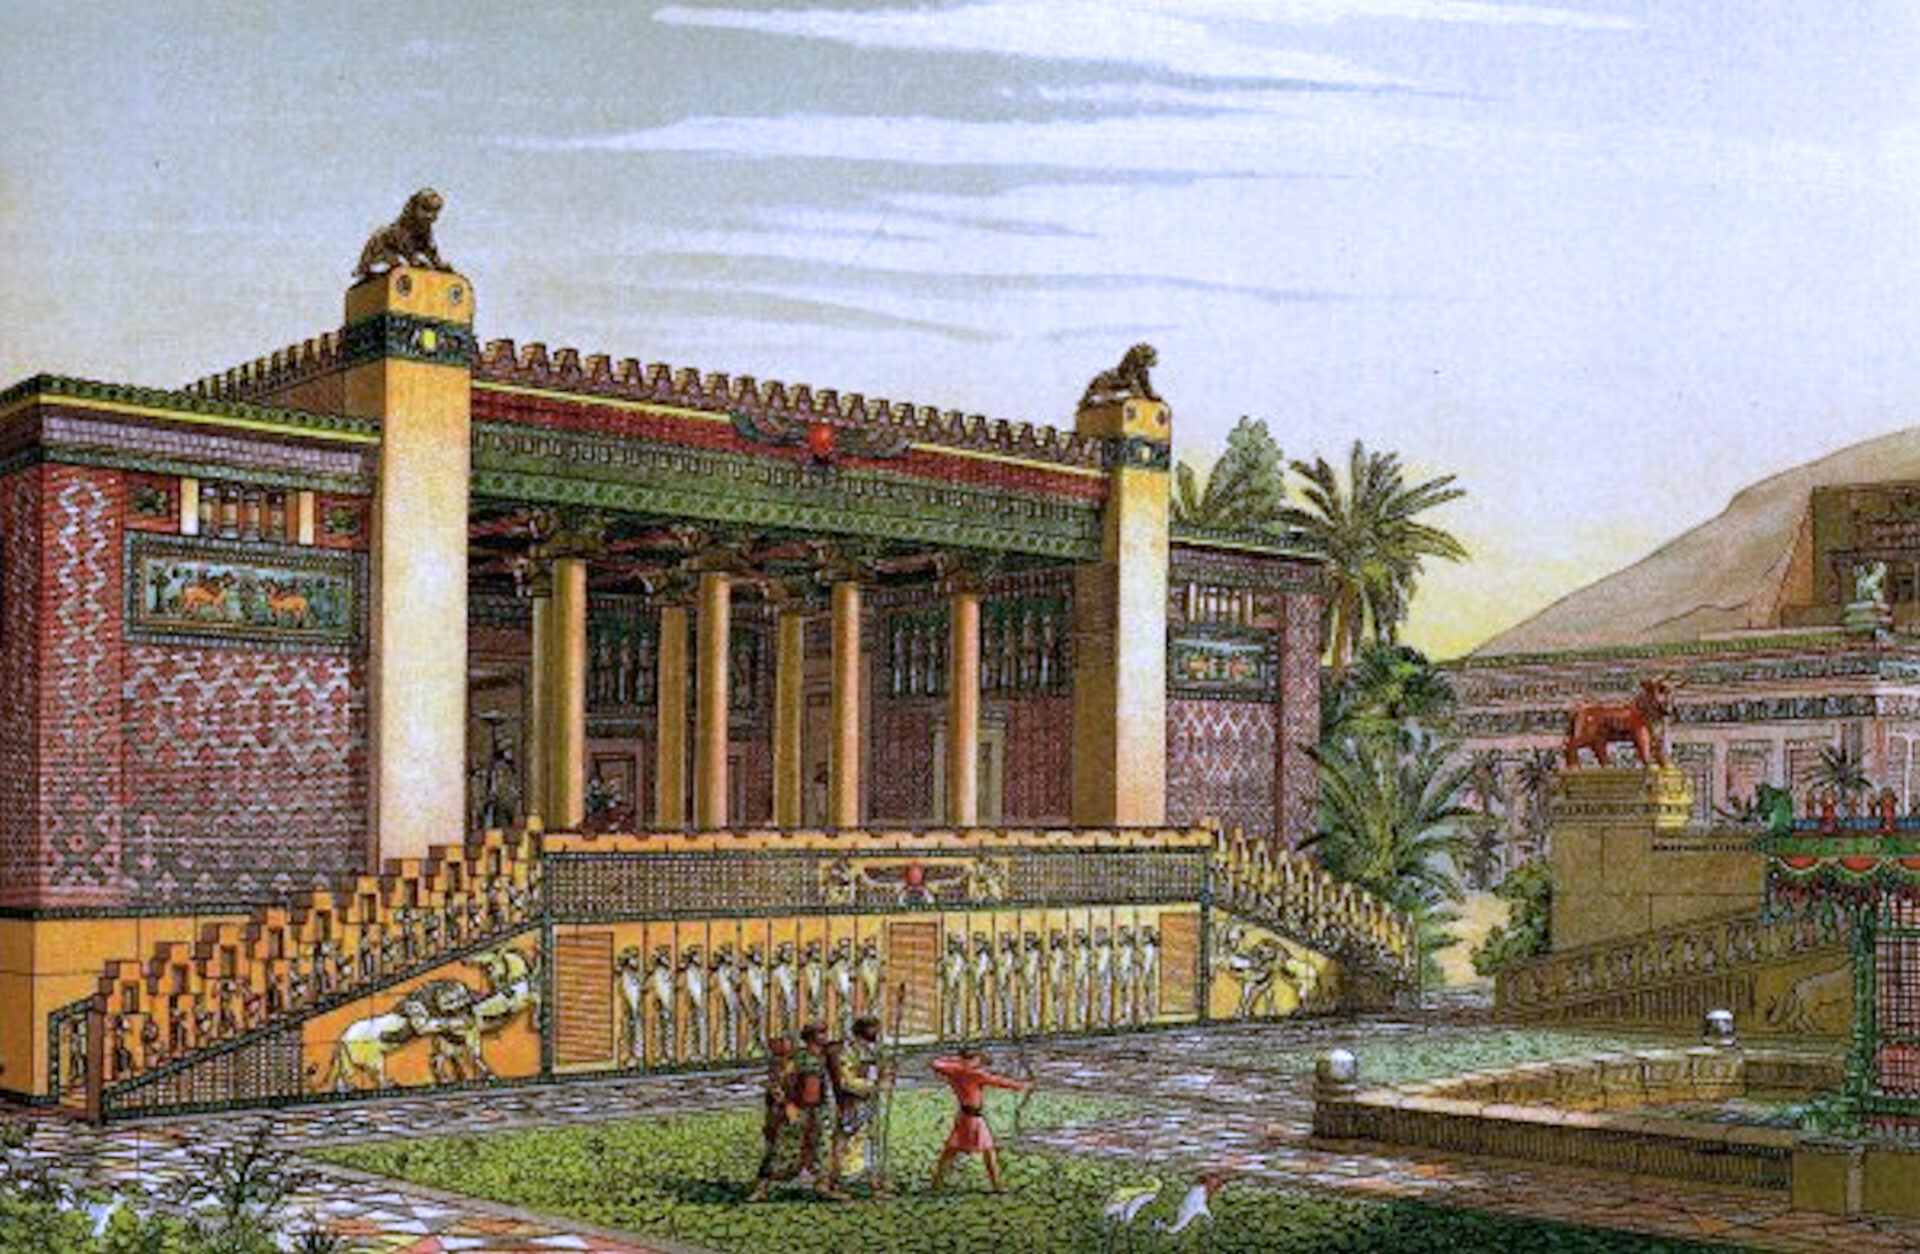 Garten vor dem Palast von Darius I. von Persien (virtuelle Darstellung von Charles Chipiez)